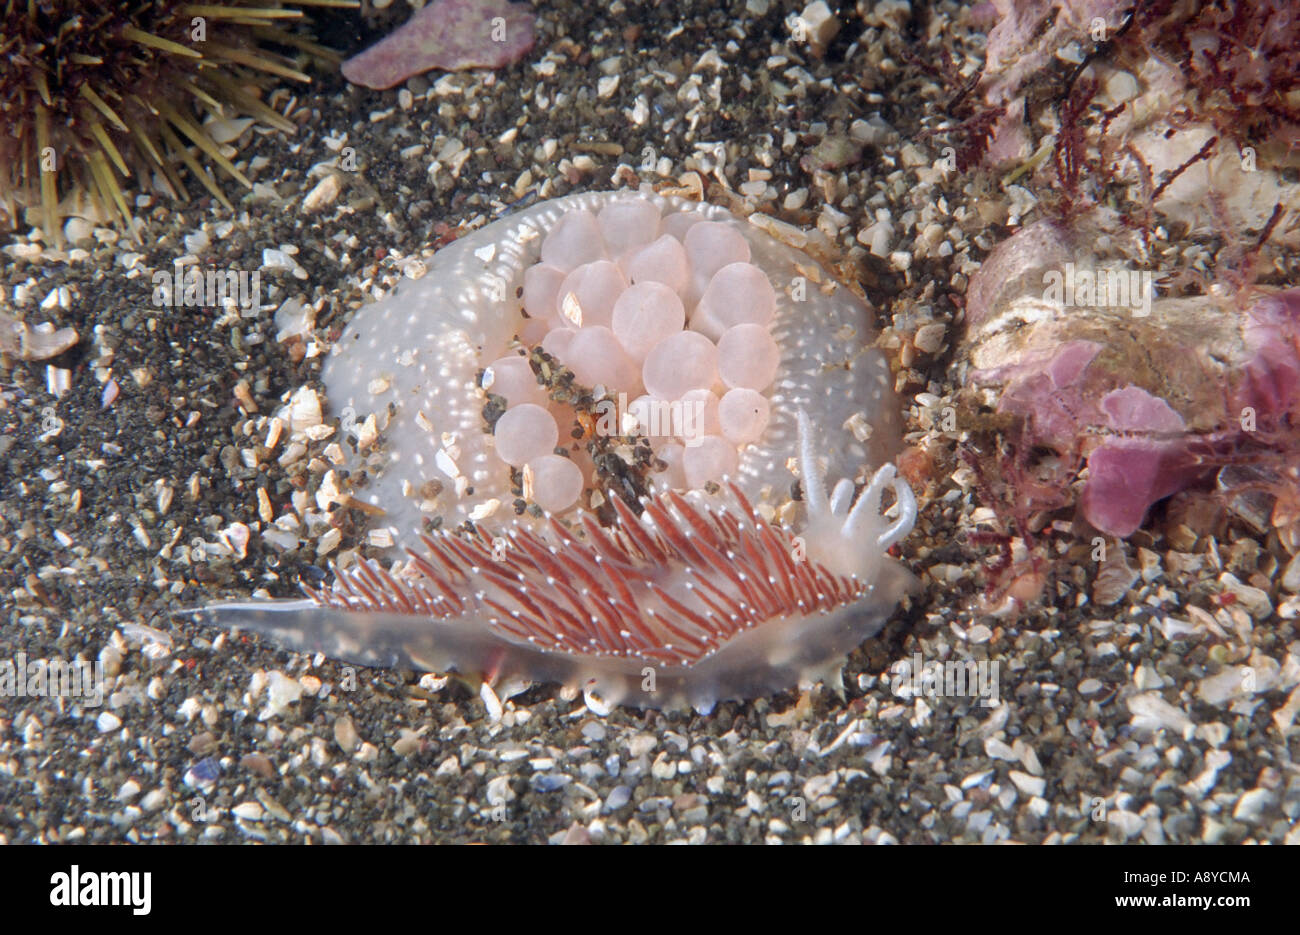 Coryphella limace de mer anémone de mer blanc attaque verrucosa Cribrinopsis olegi qui creuse des galeries dans le sable . Sous-marine du Pacifique Nord Banque D'Images